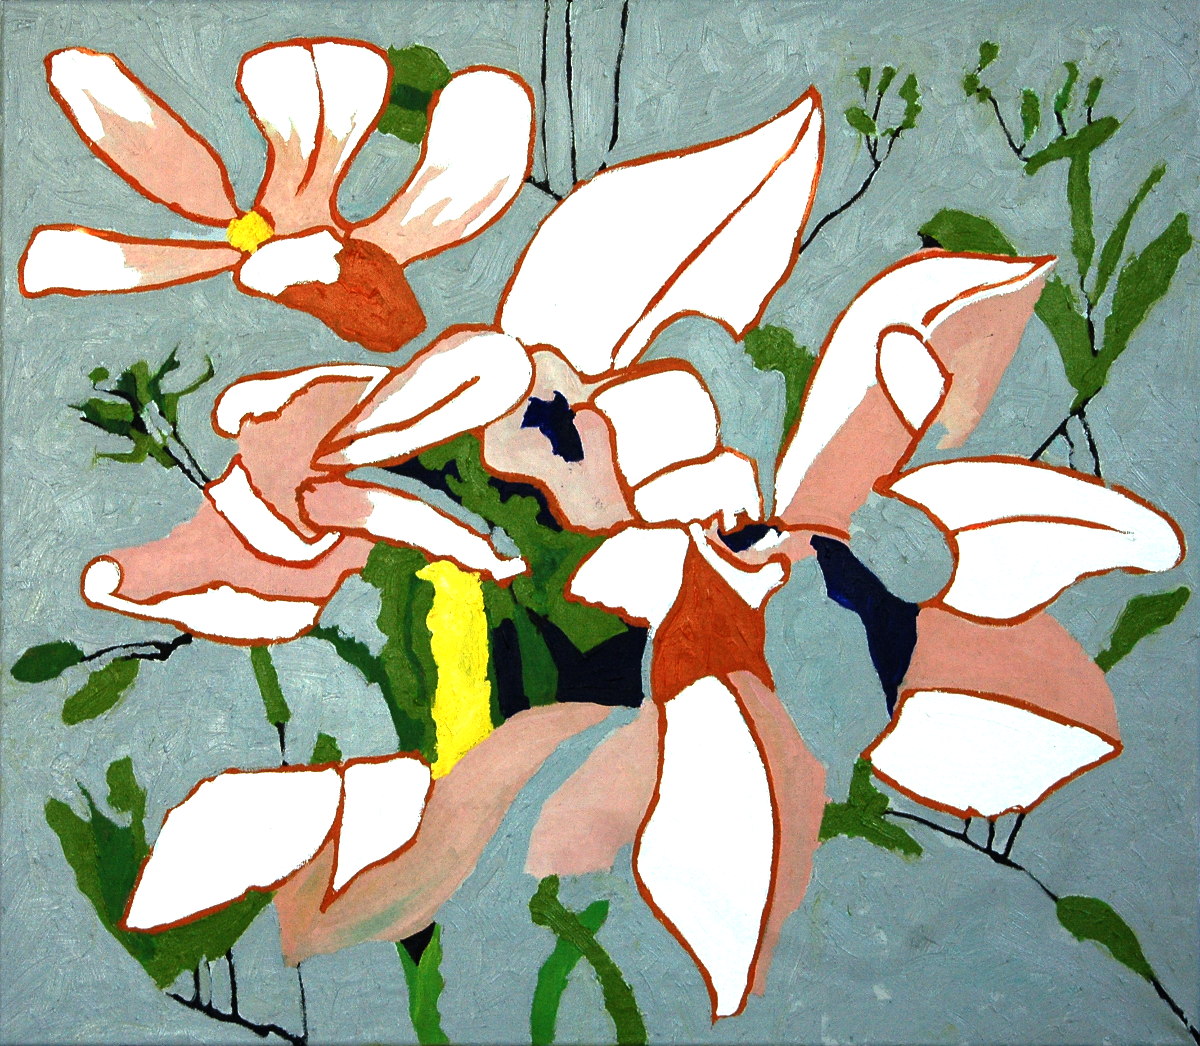 10. Magnolia (after Matisse), 72 x 82cm, 2017